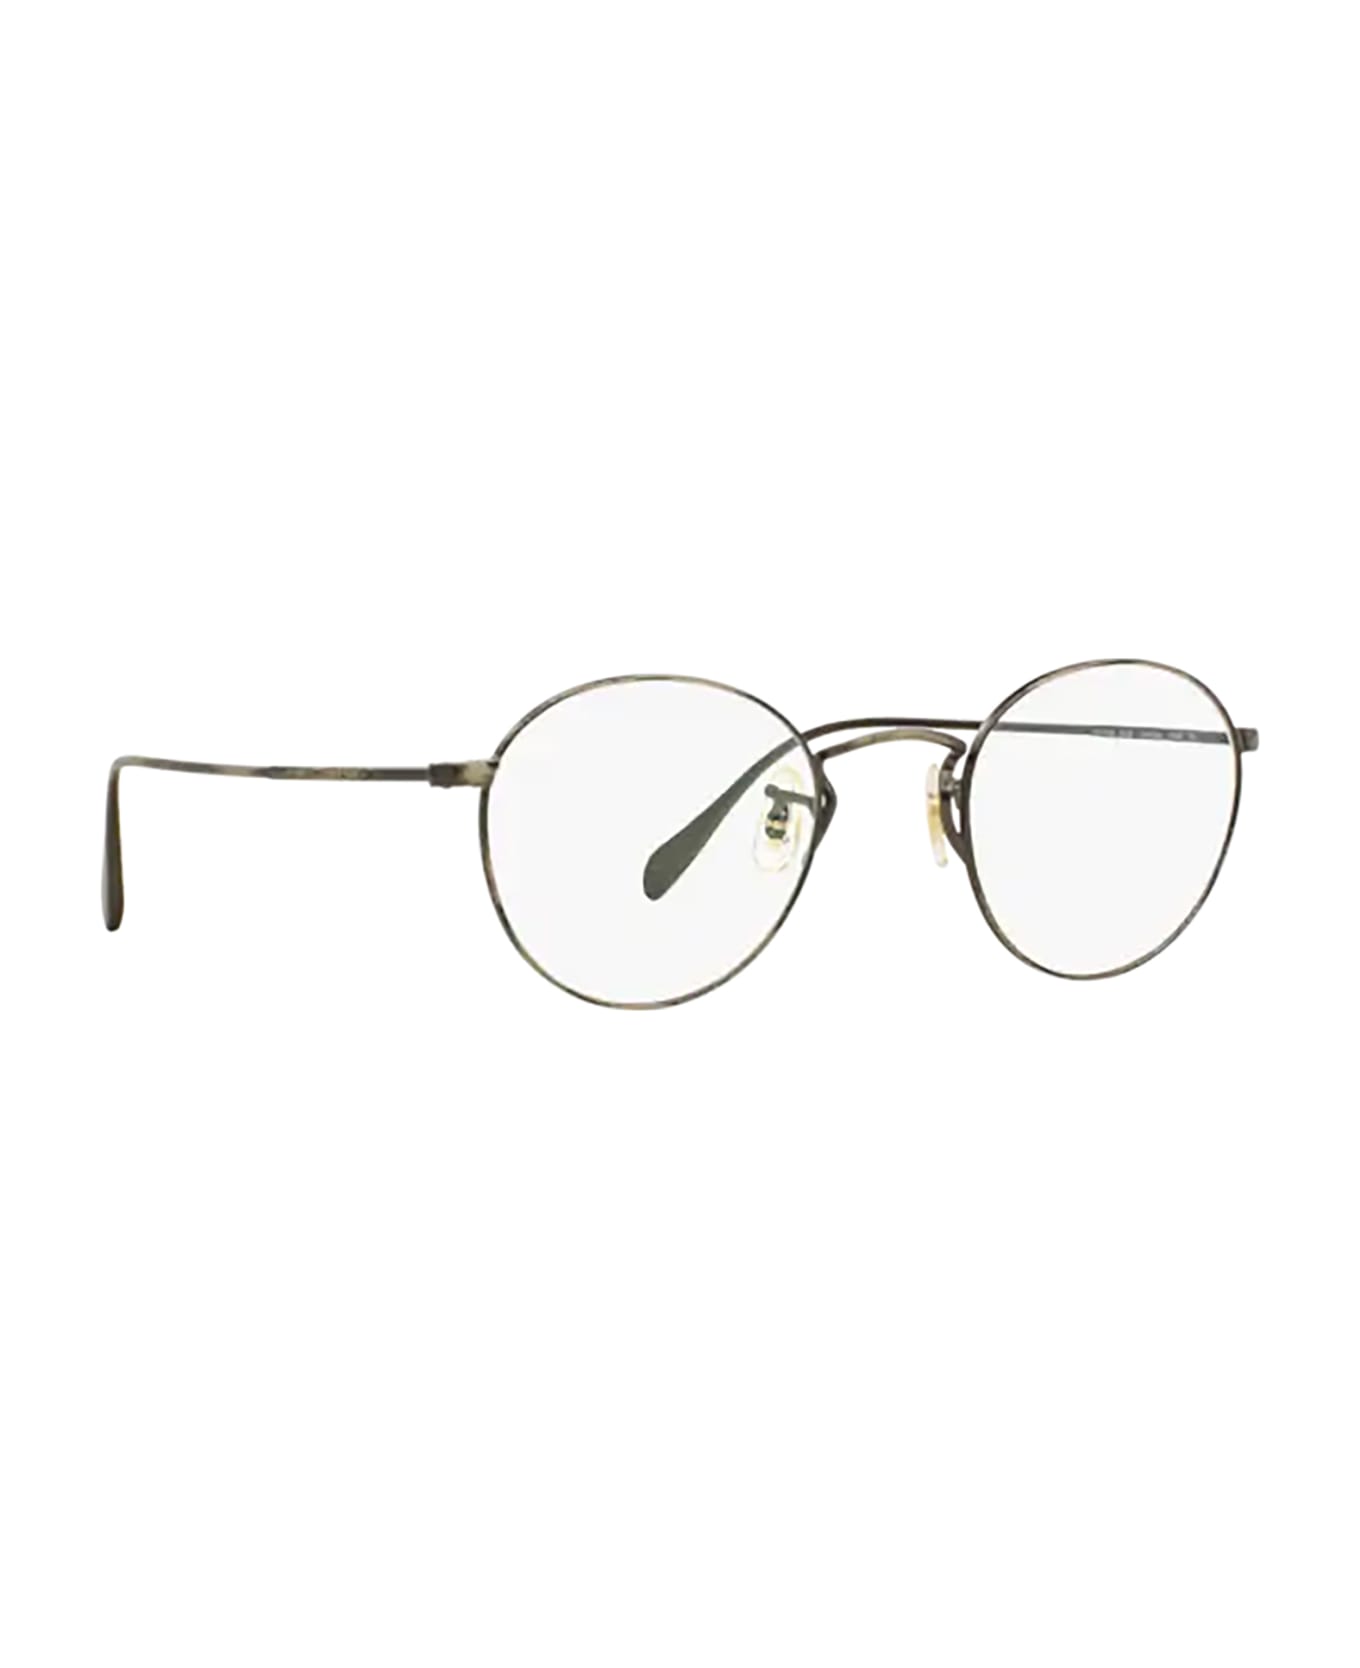 Oliver Peoples Ov1186 Antique Pewter Glasses - Antique Pewter